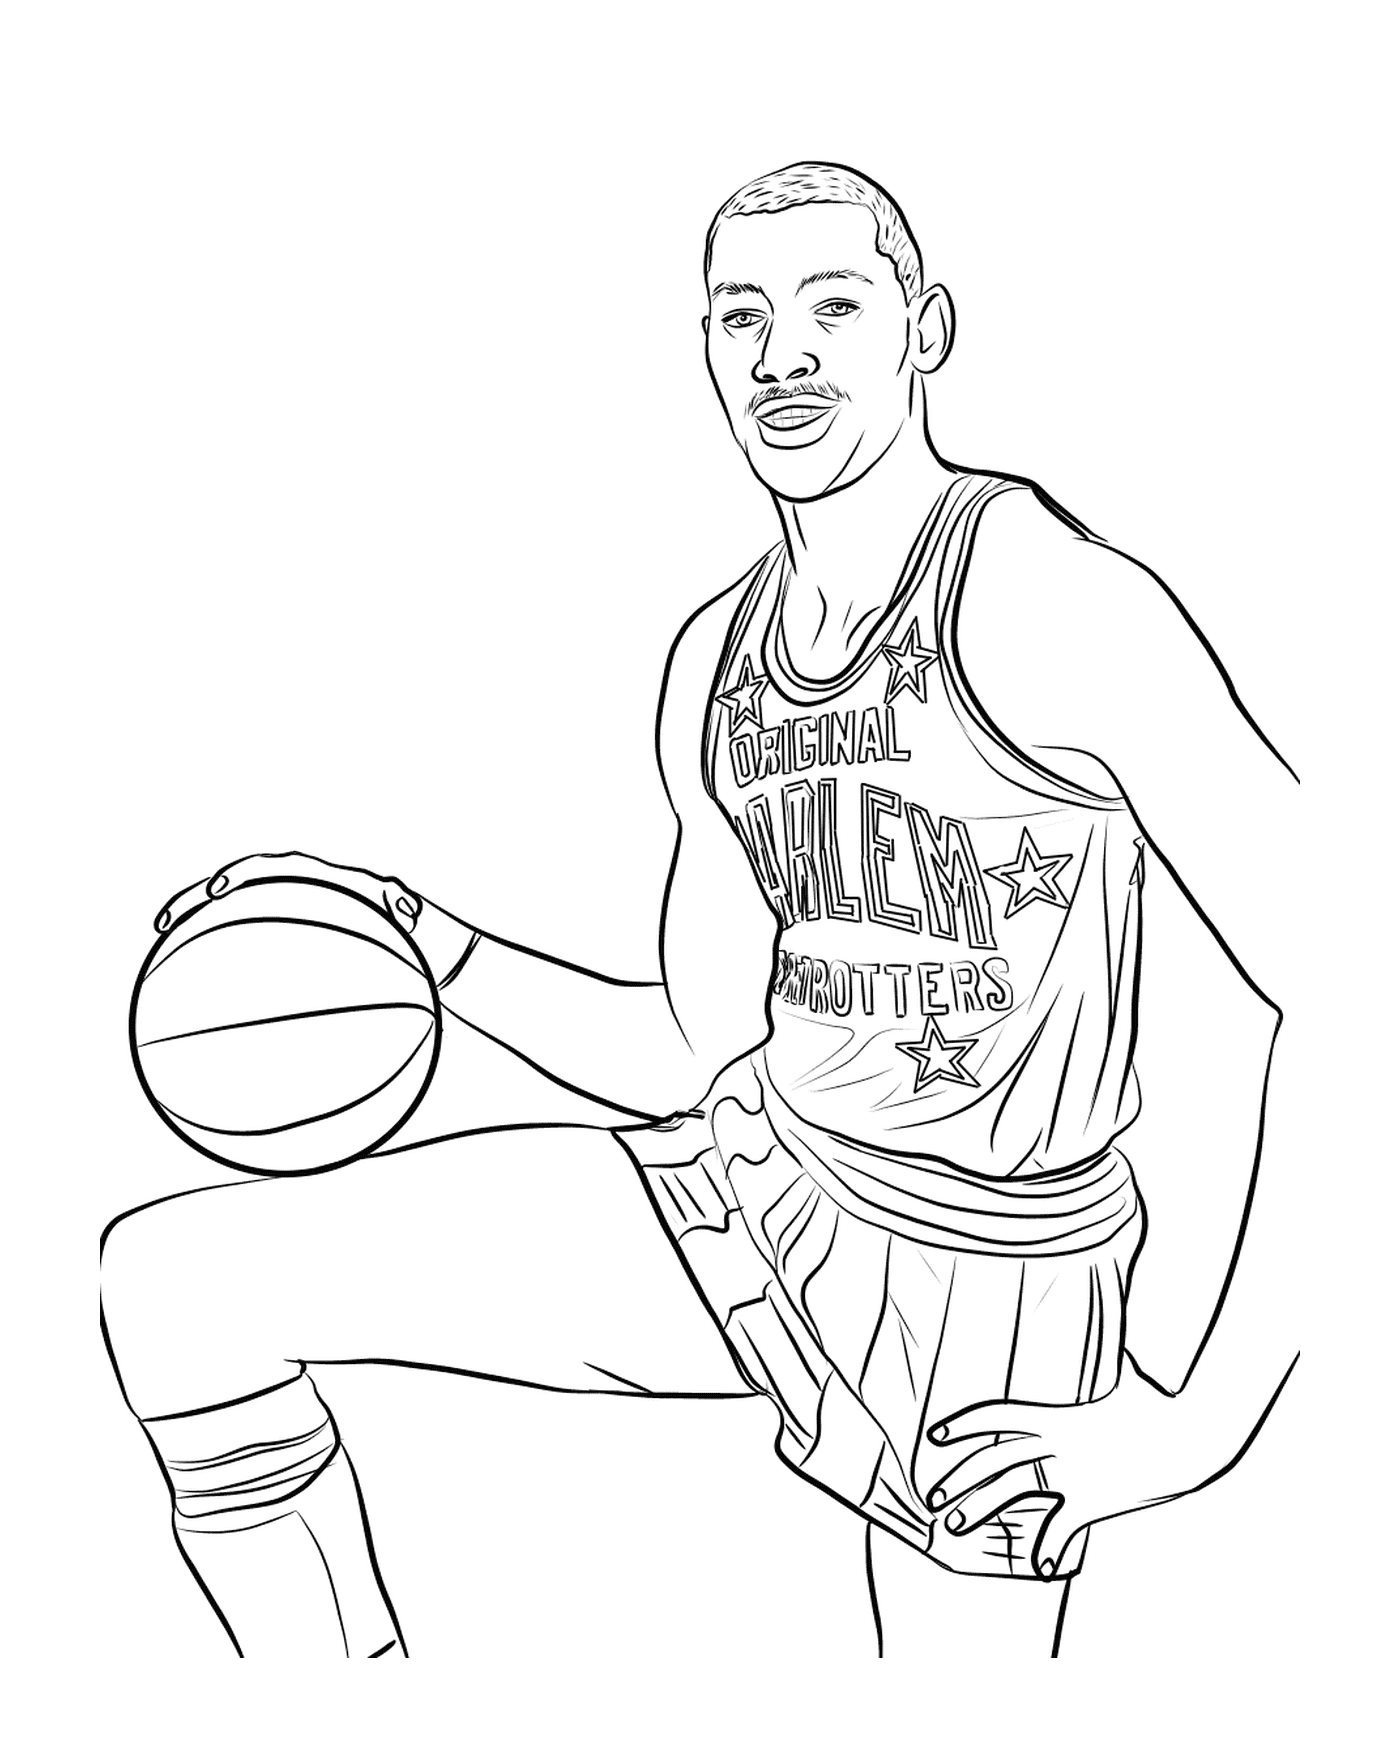  Wilt Chamberlain, giocatore di basket 